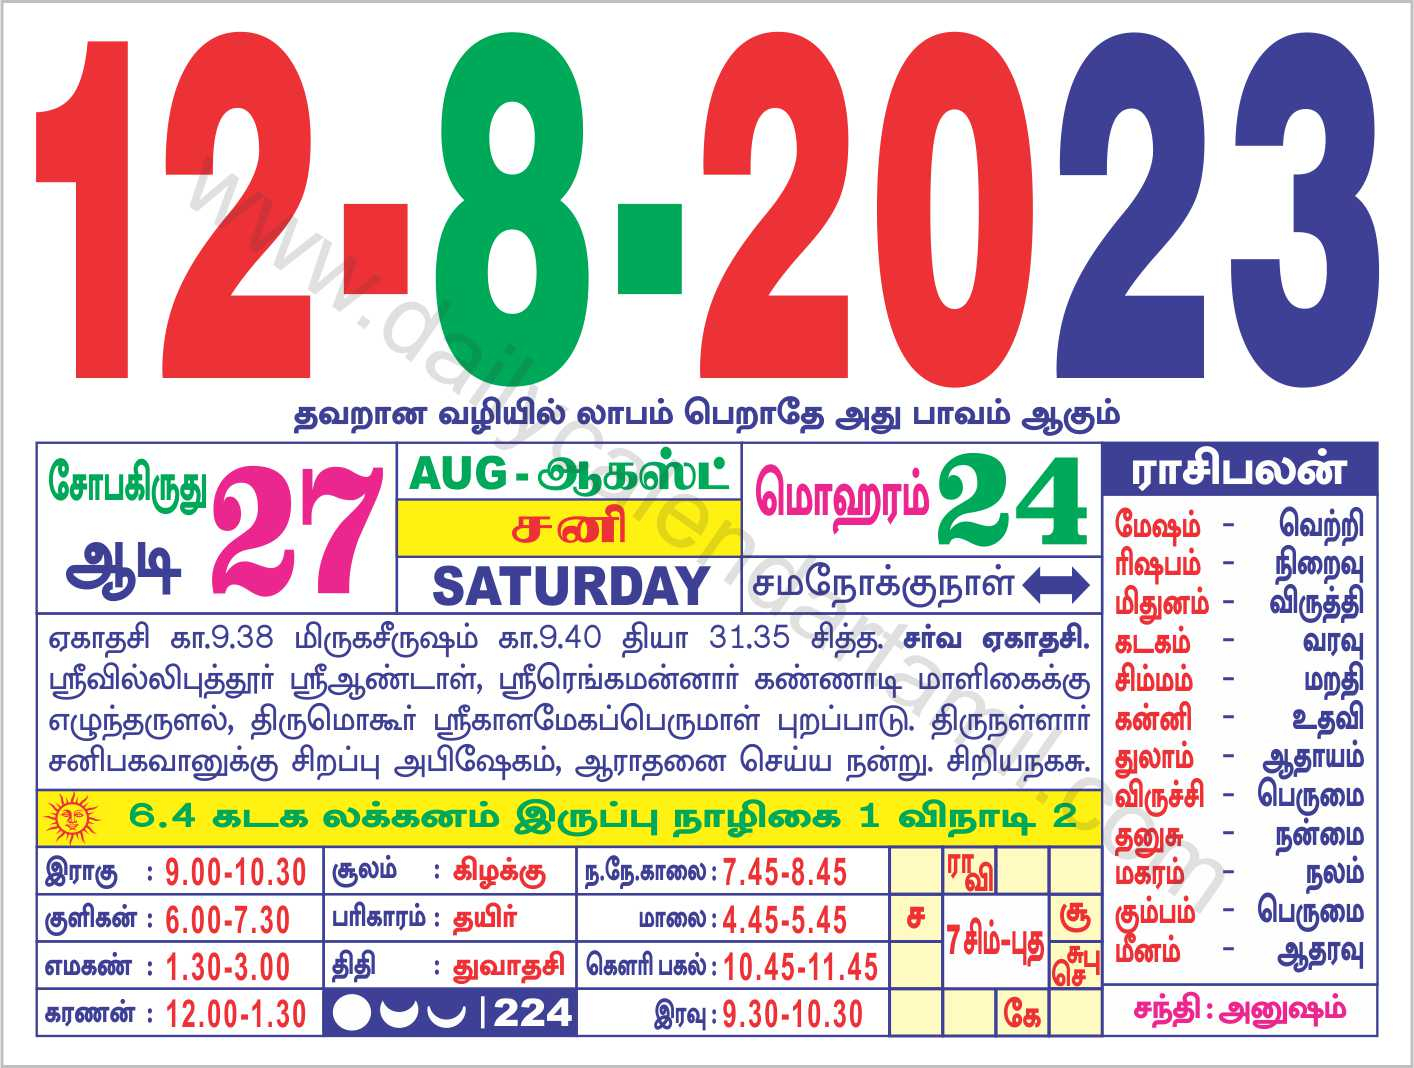 lala-ramswaroop-calendar-2023-2023-panchang-from-january-5-2023-hindu-calendar-januarycalendar